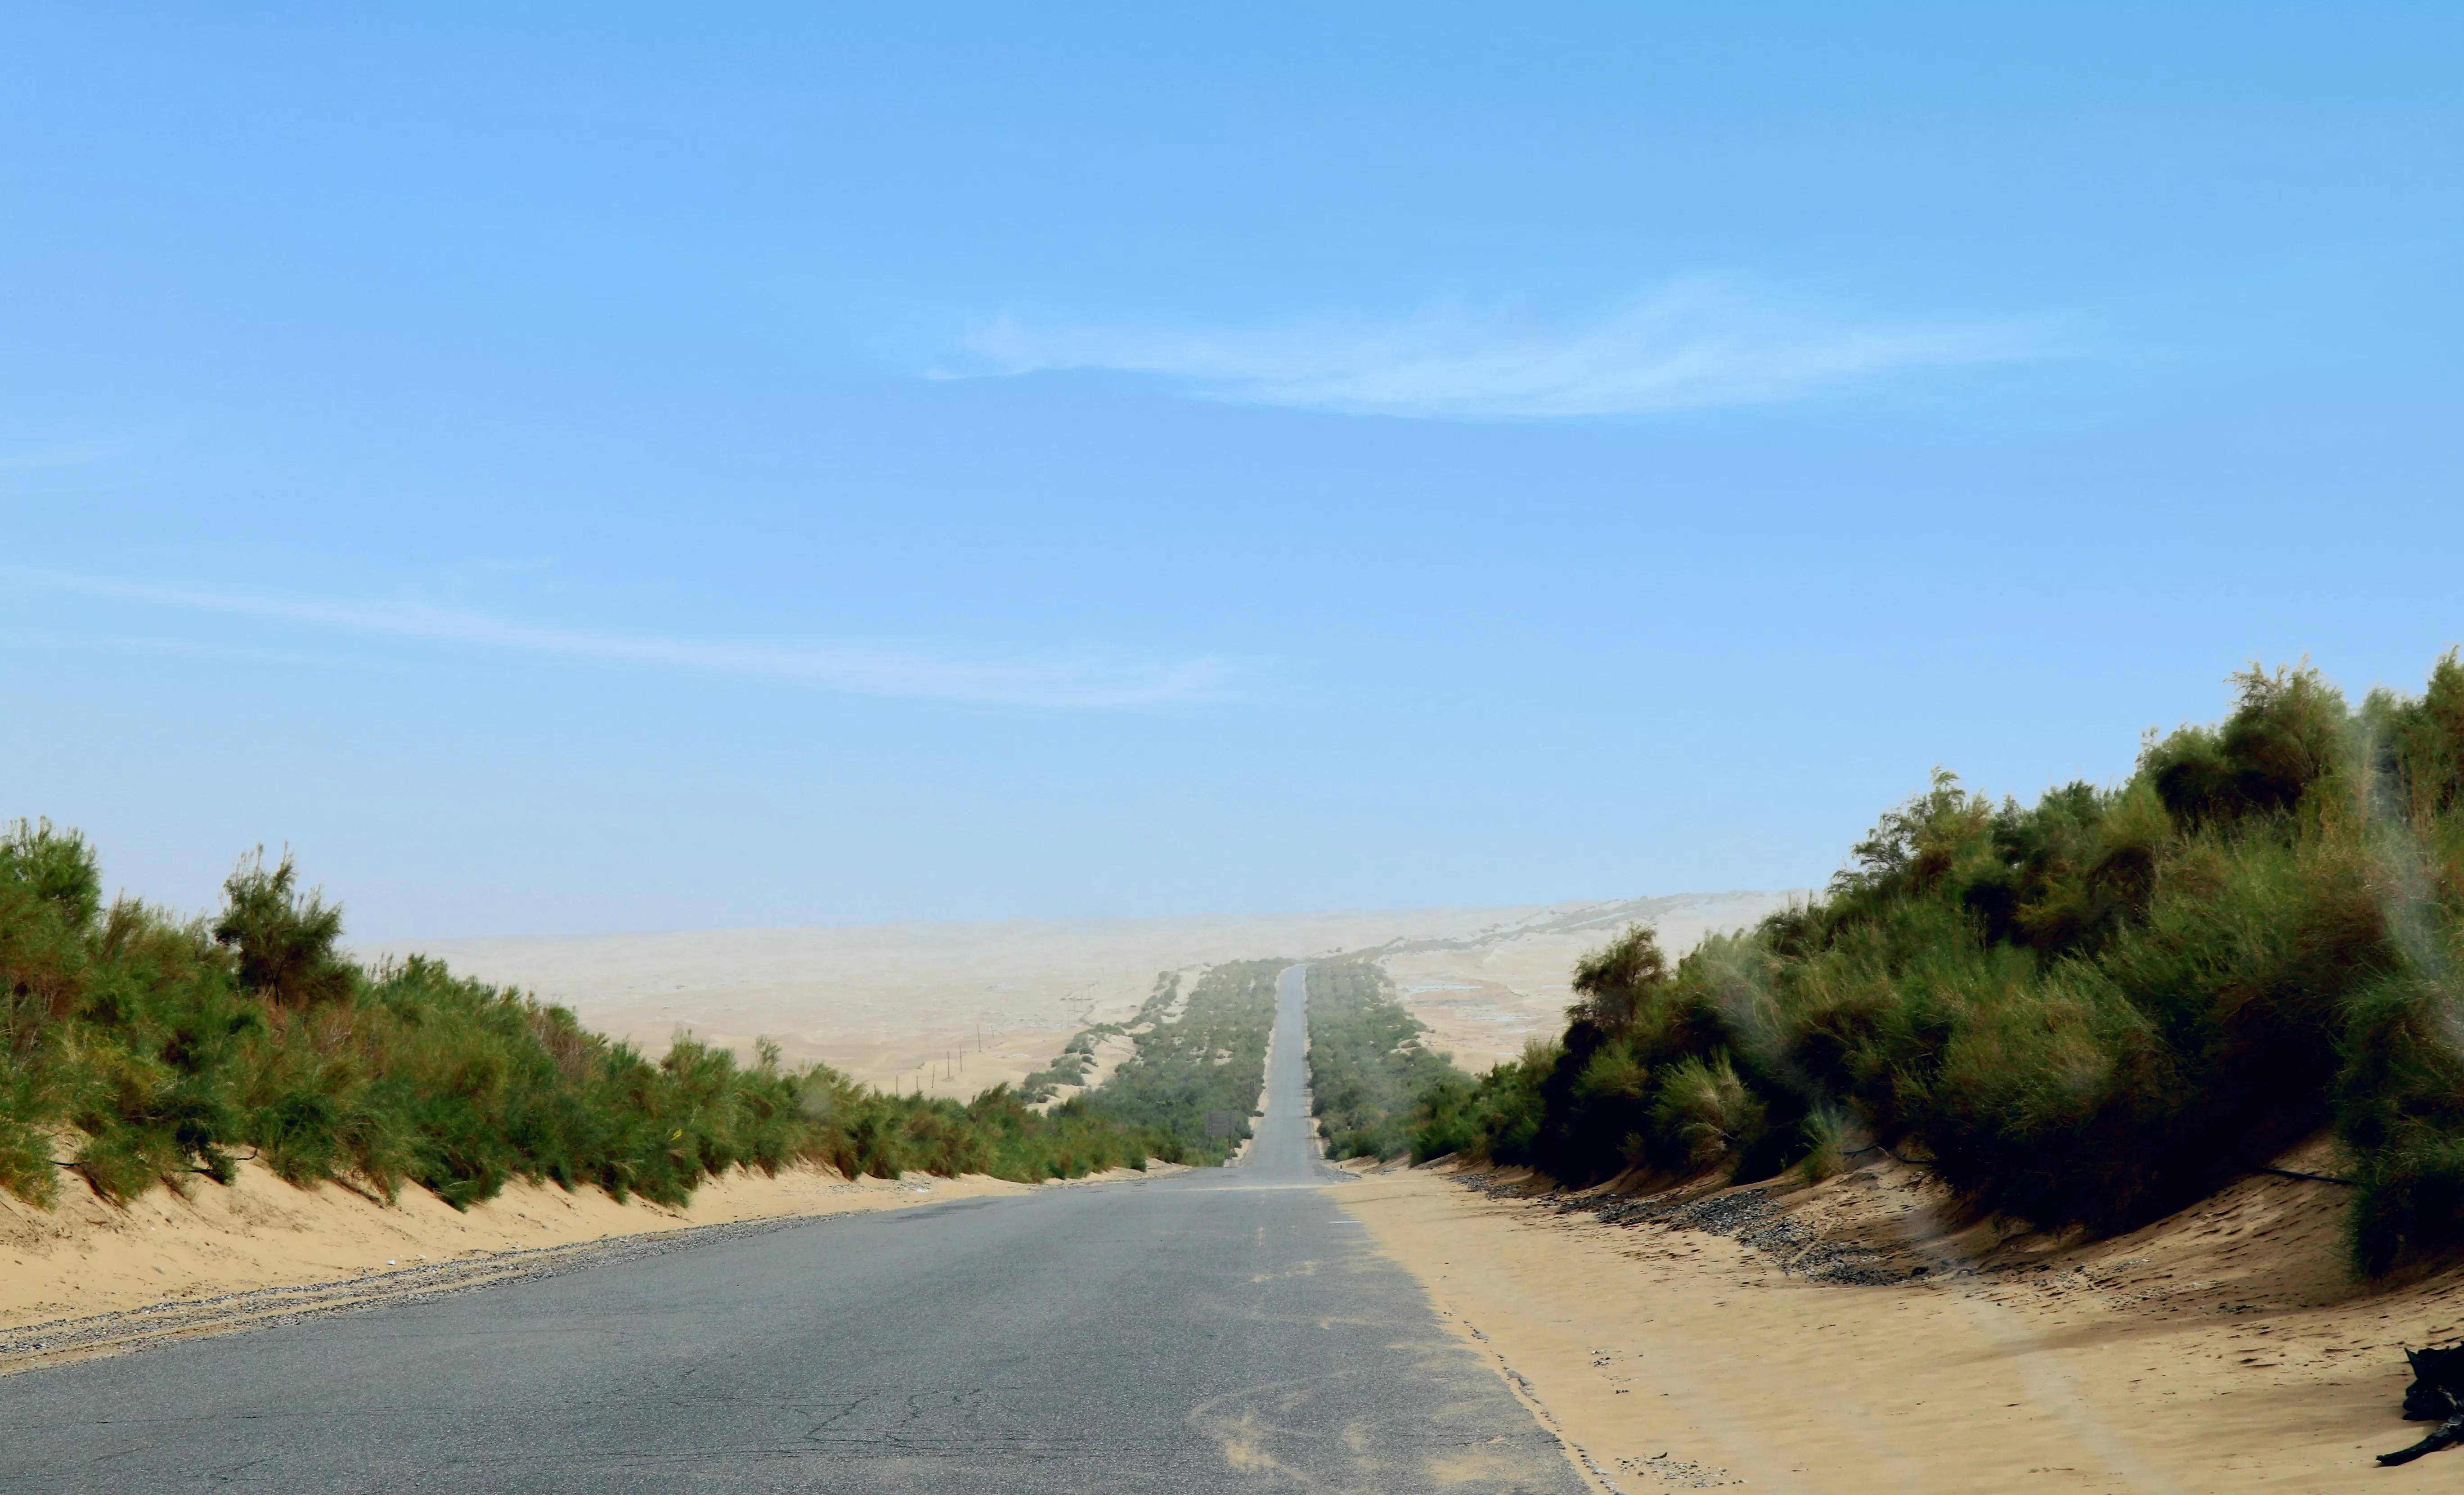 大美新疆(图文)第30集:塔克拉玛干沙漠公路